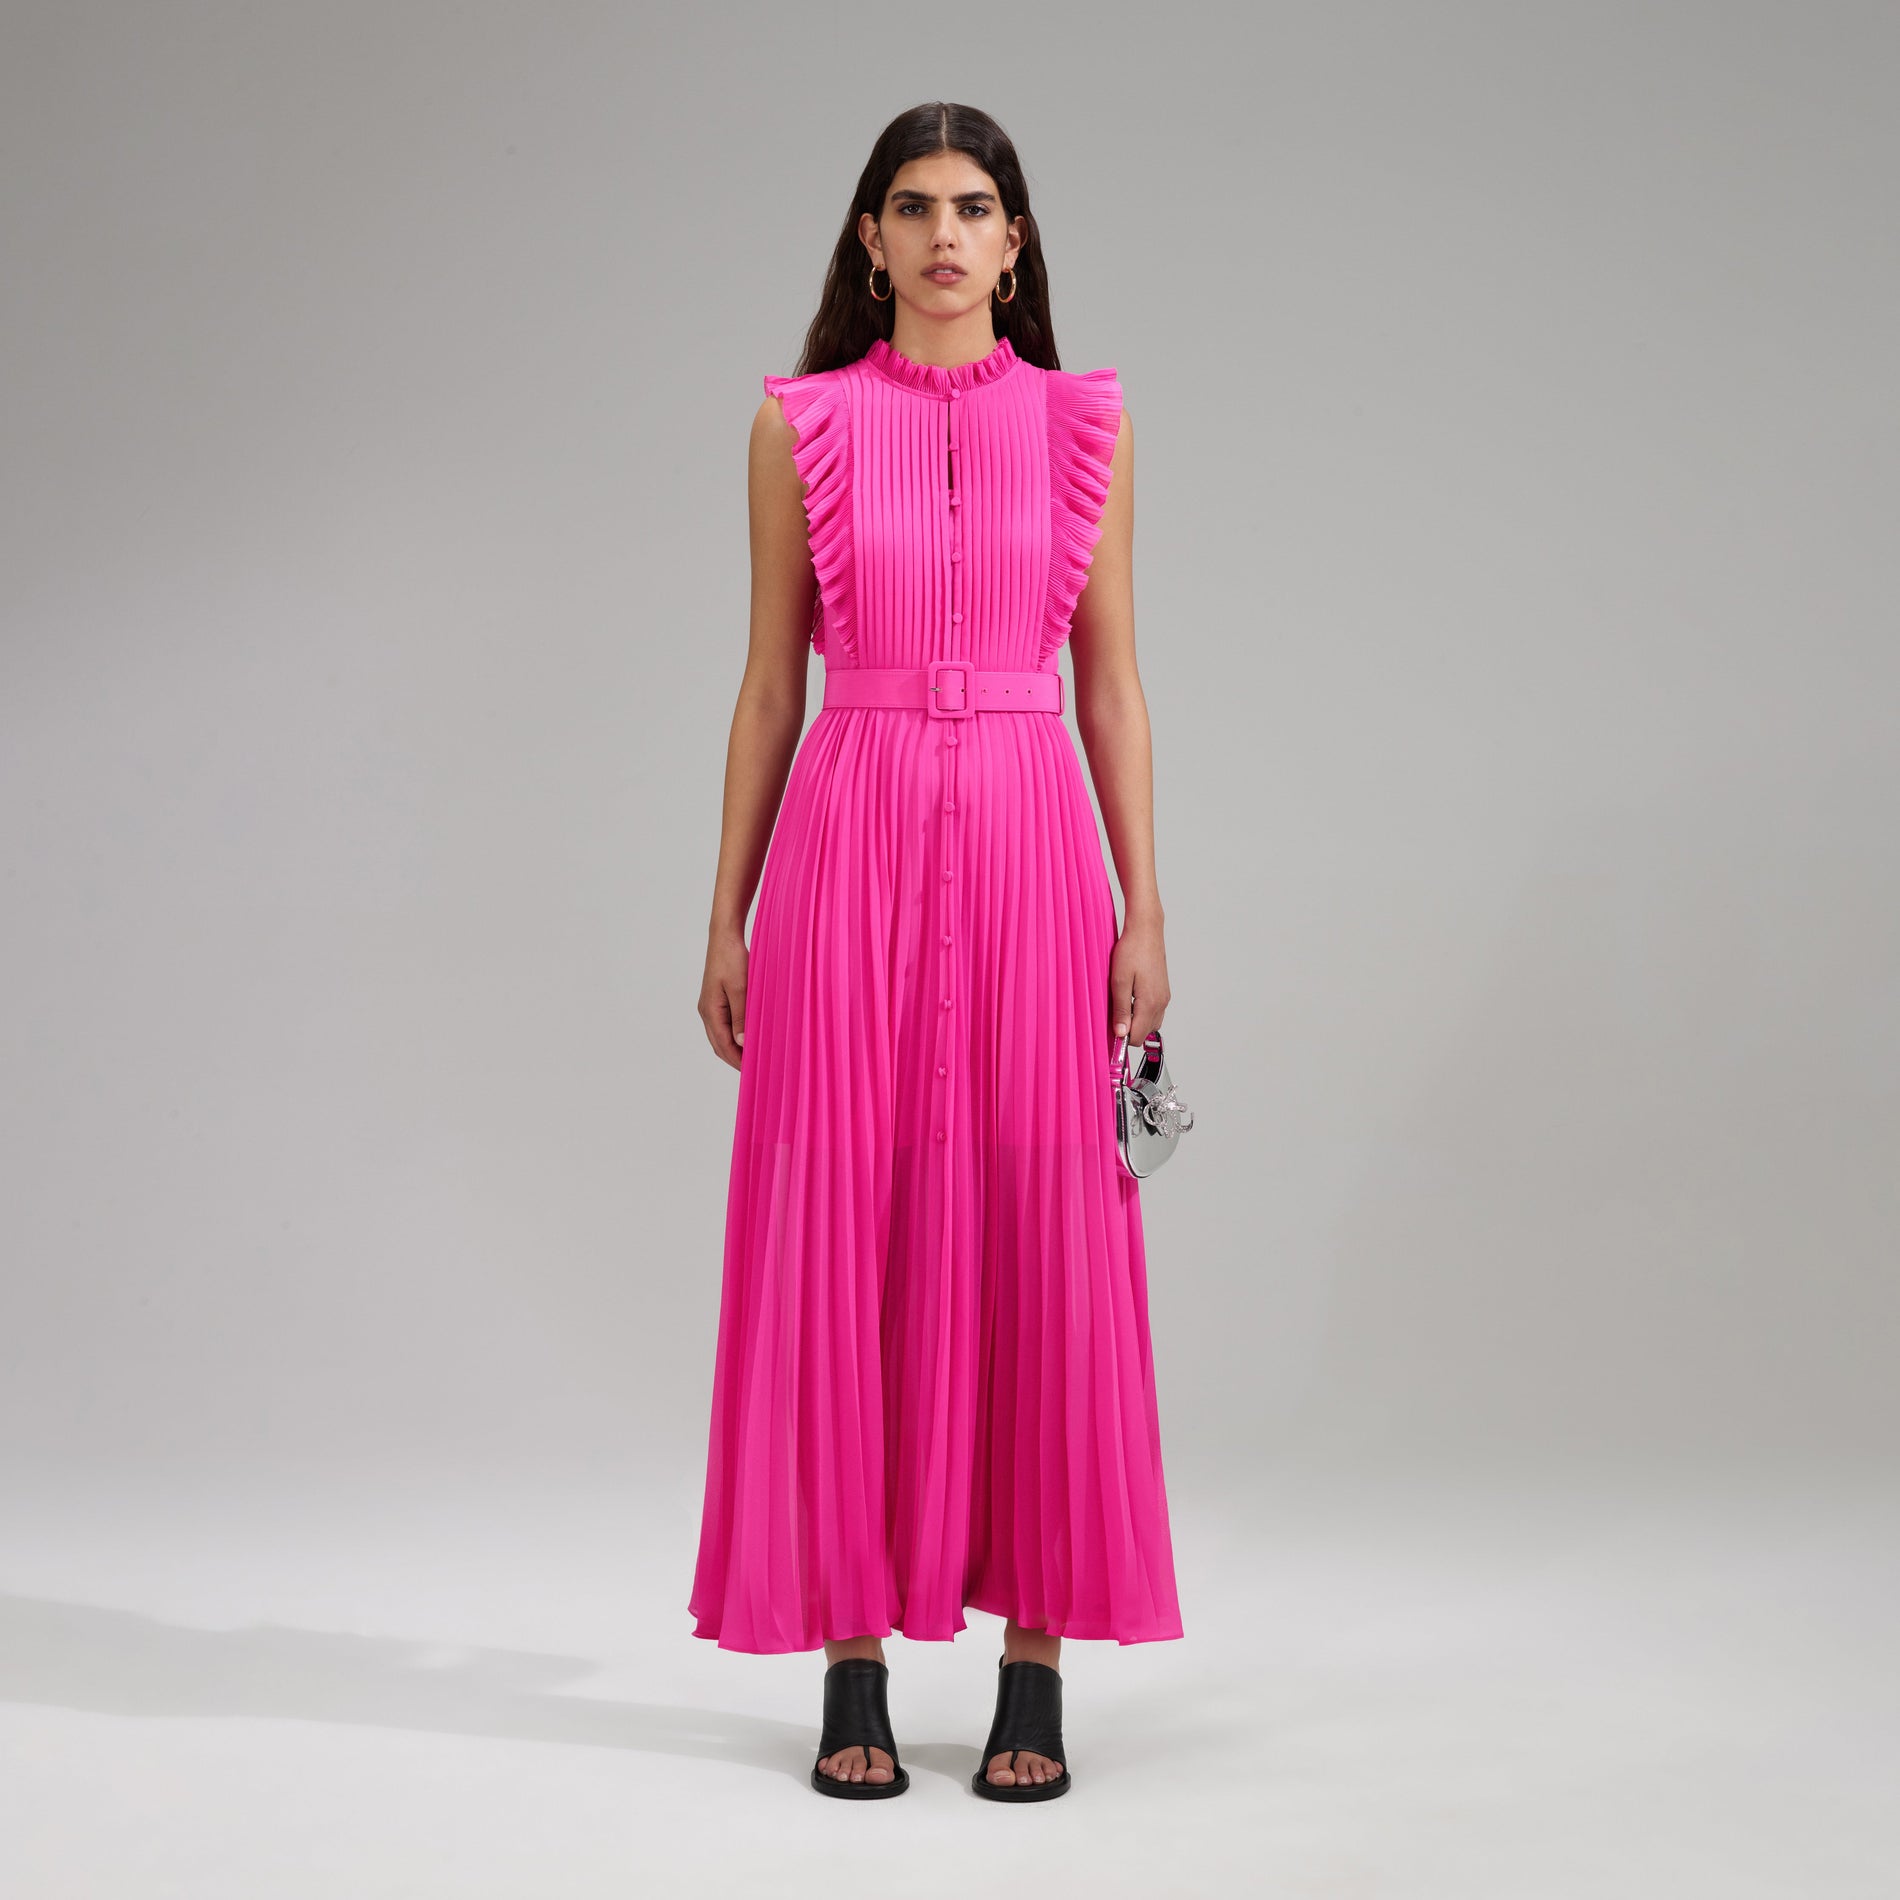 A woman wearing the Pink Chiffon Sleeveless Ruffle Midi Dress